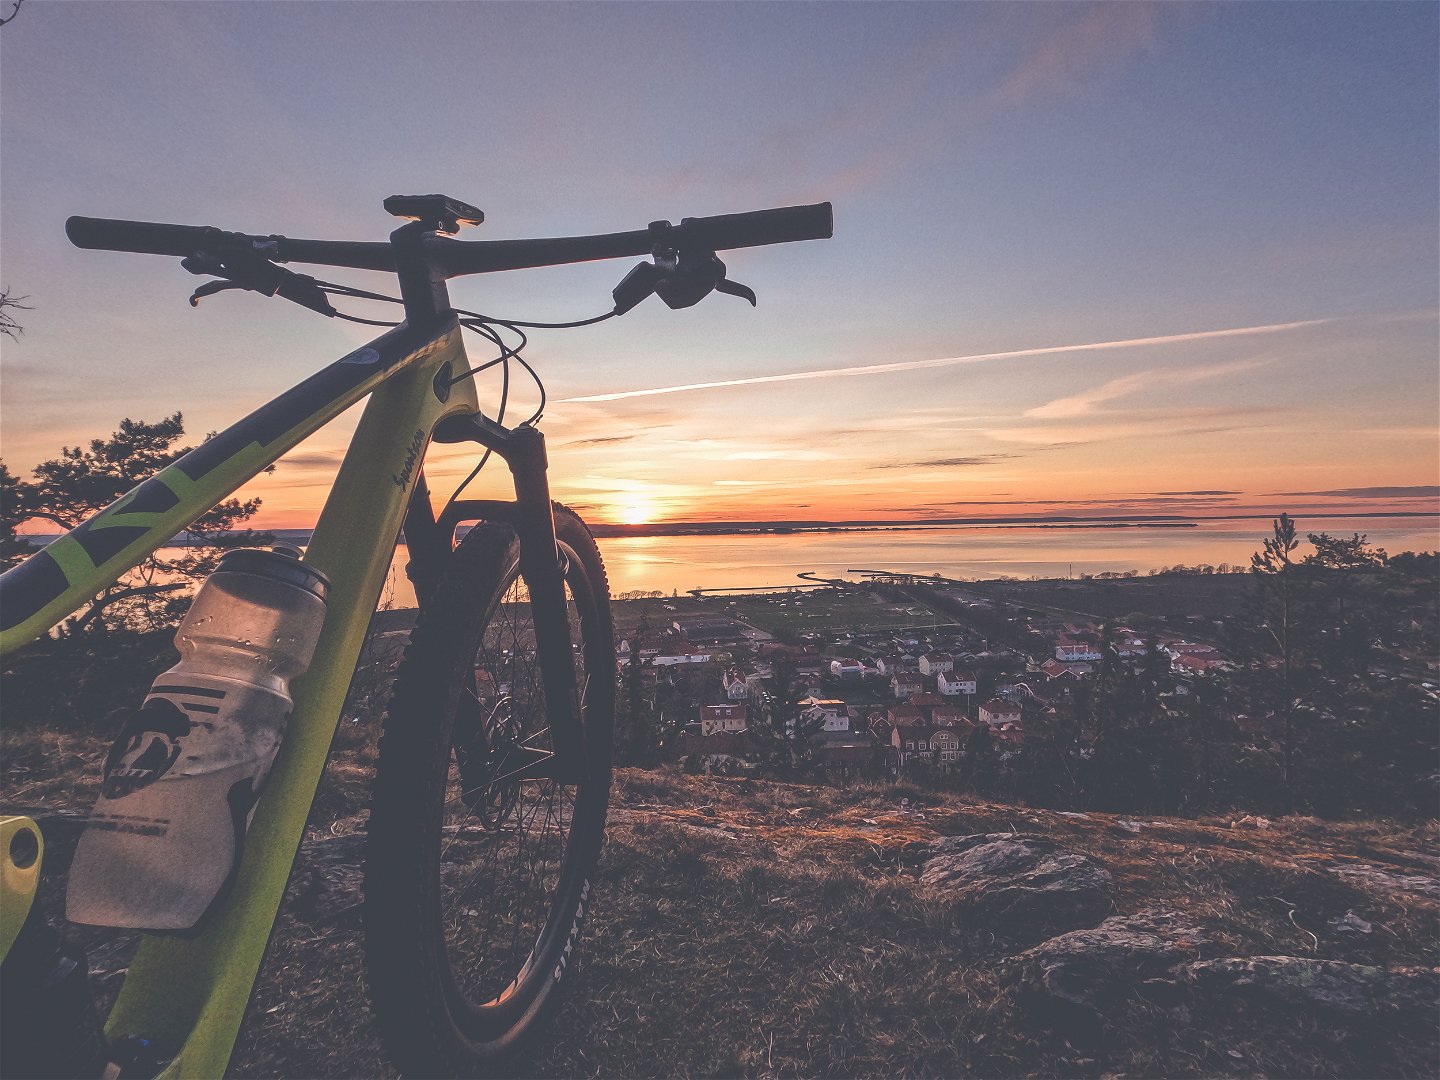 Cykla in i en solnedgång på Grännaberget